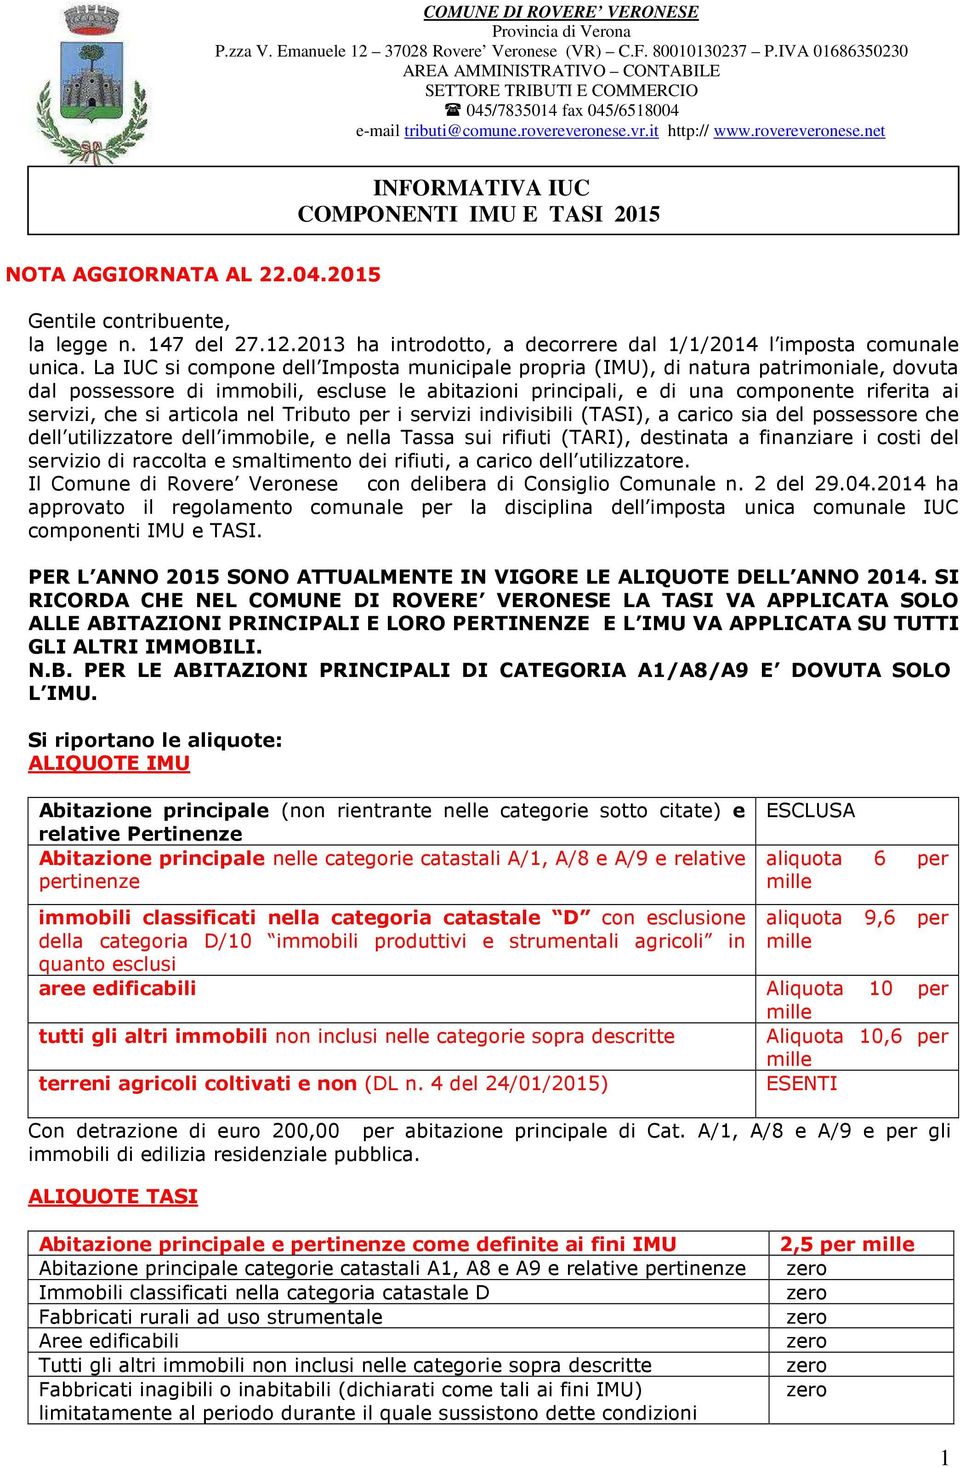 vr.it http:// www.rovereveronese.net INFORMATIVA IUC COMPONENTI IMU E TASI 2015 NOTA AGGIORNATA AL 22.04.2015 Gentile contribuente, la legge n. 147 del 27.12.